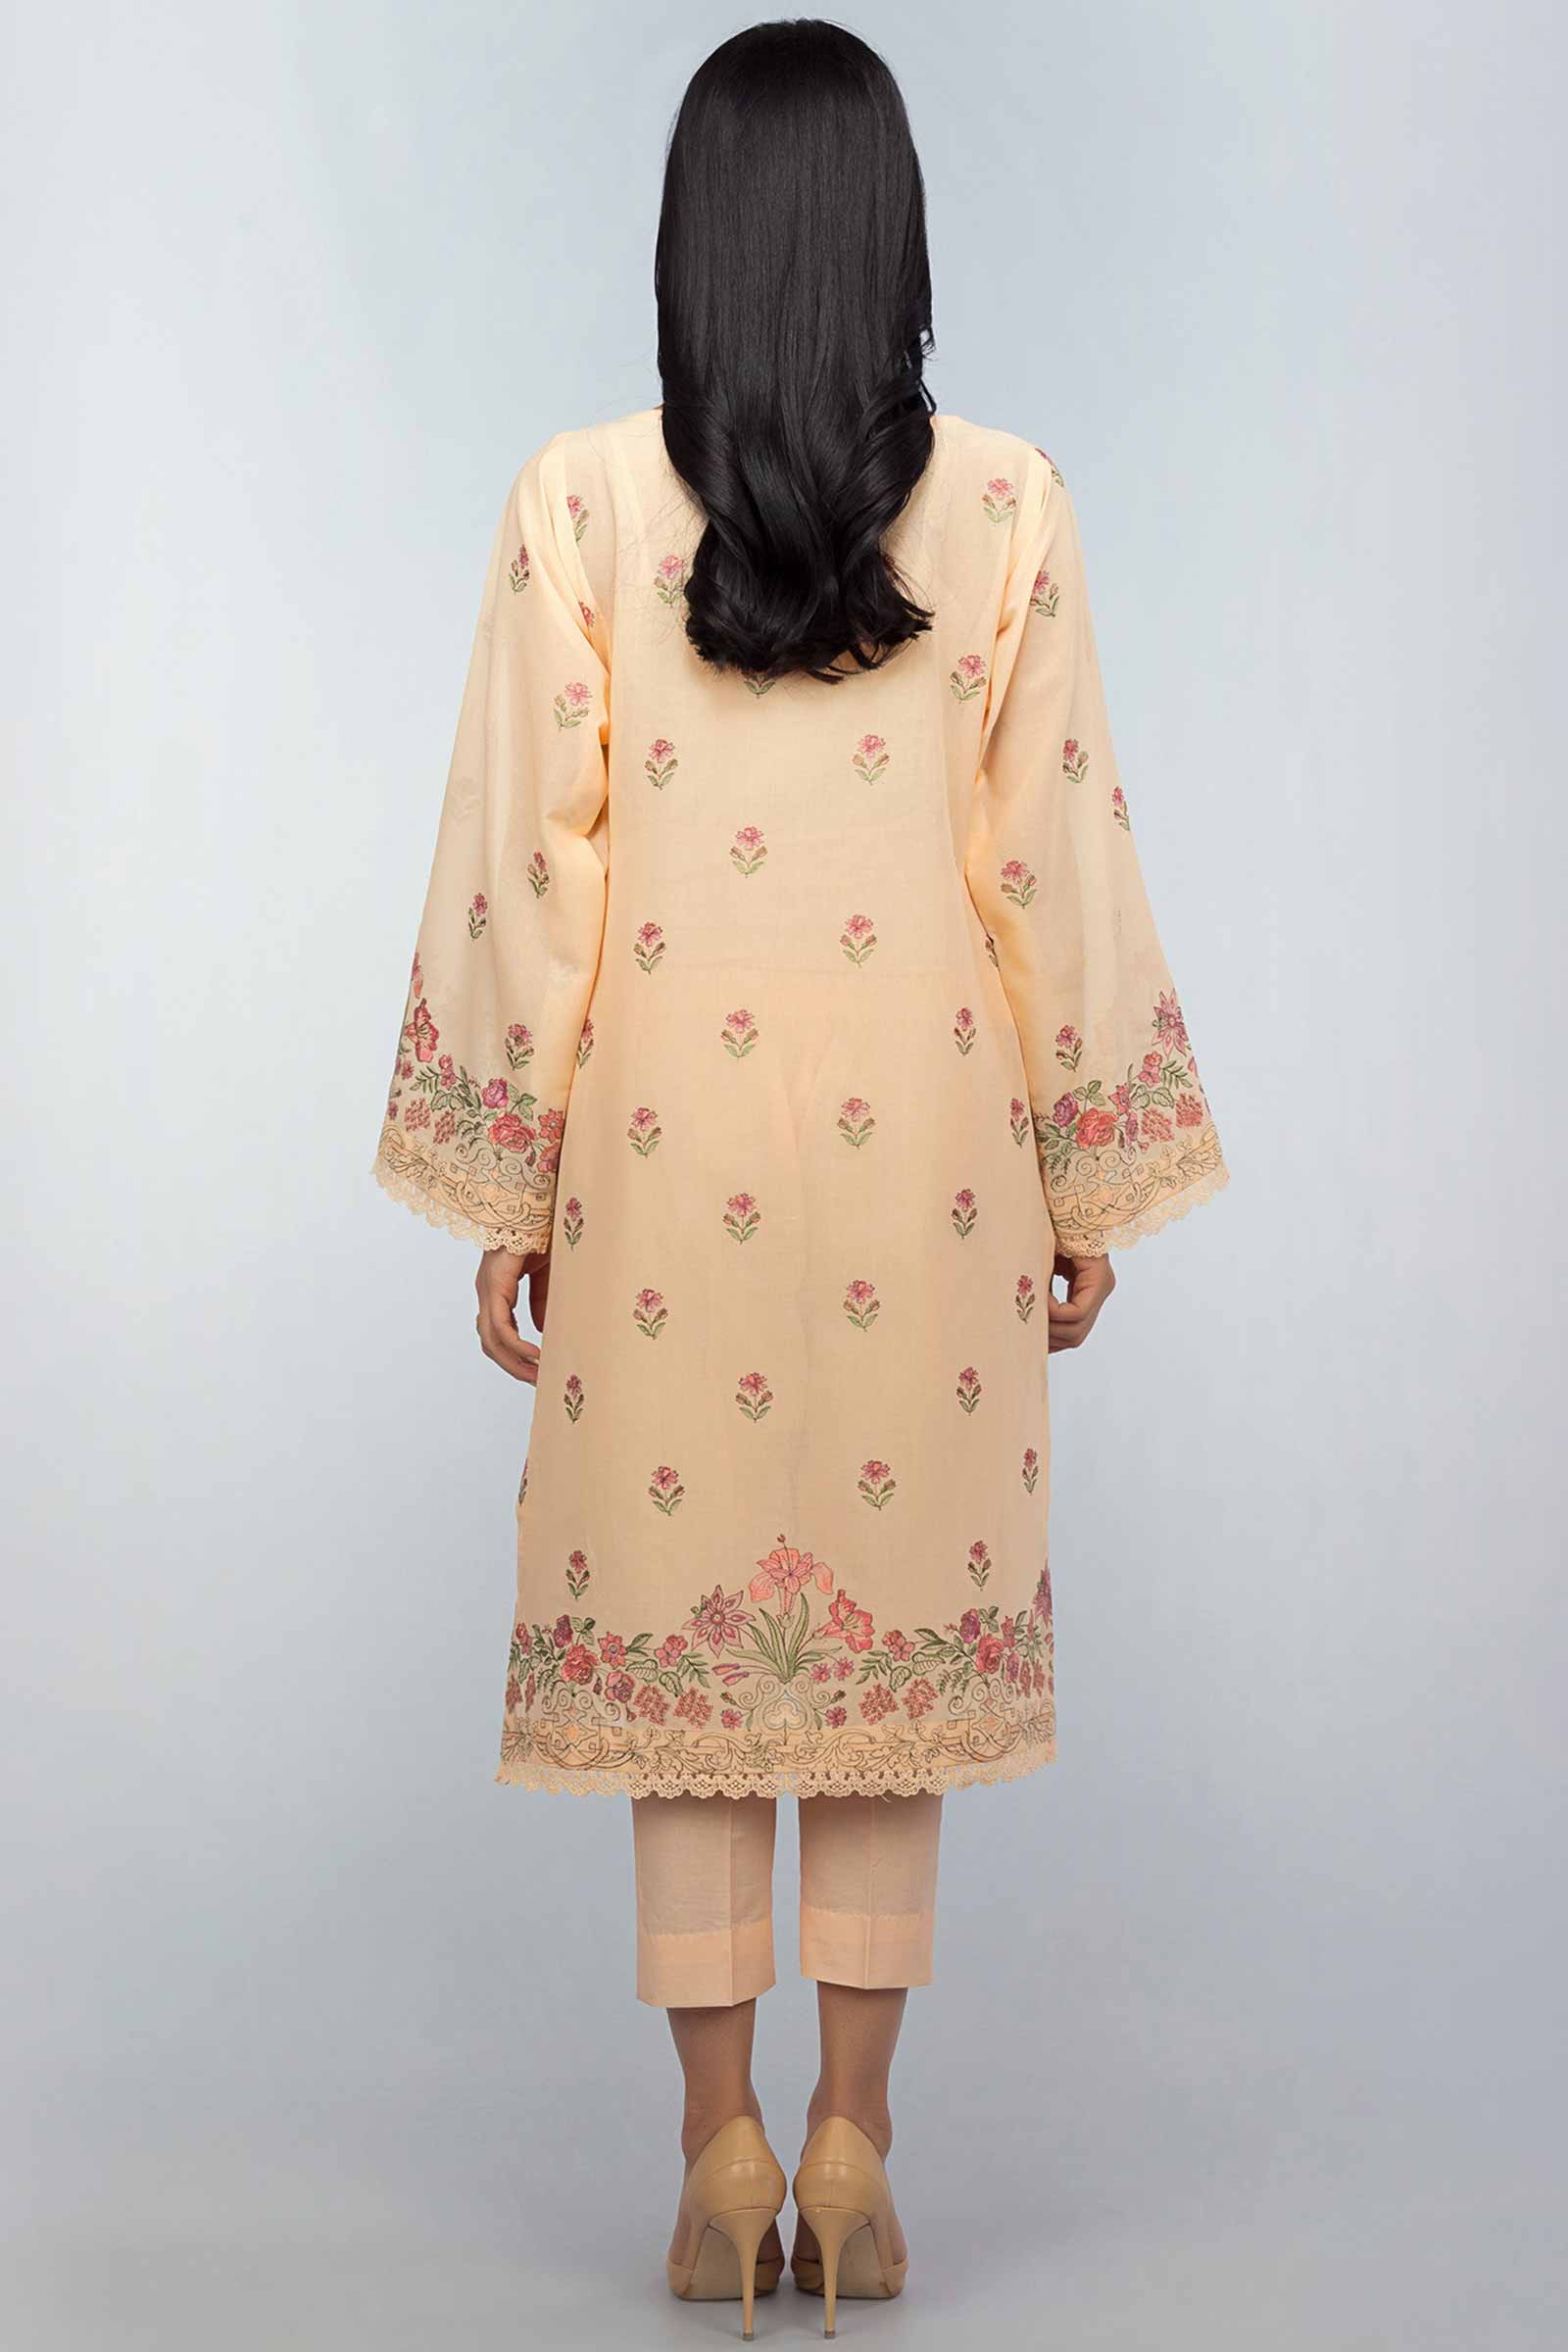 Unstitched Pakistani Suit by Bareeze Clothing